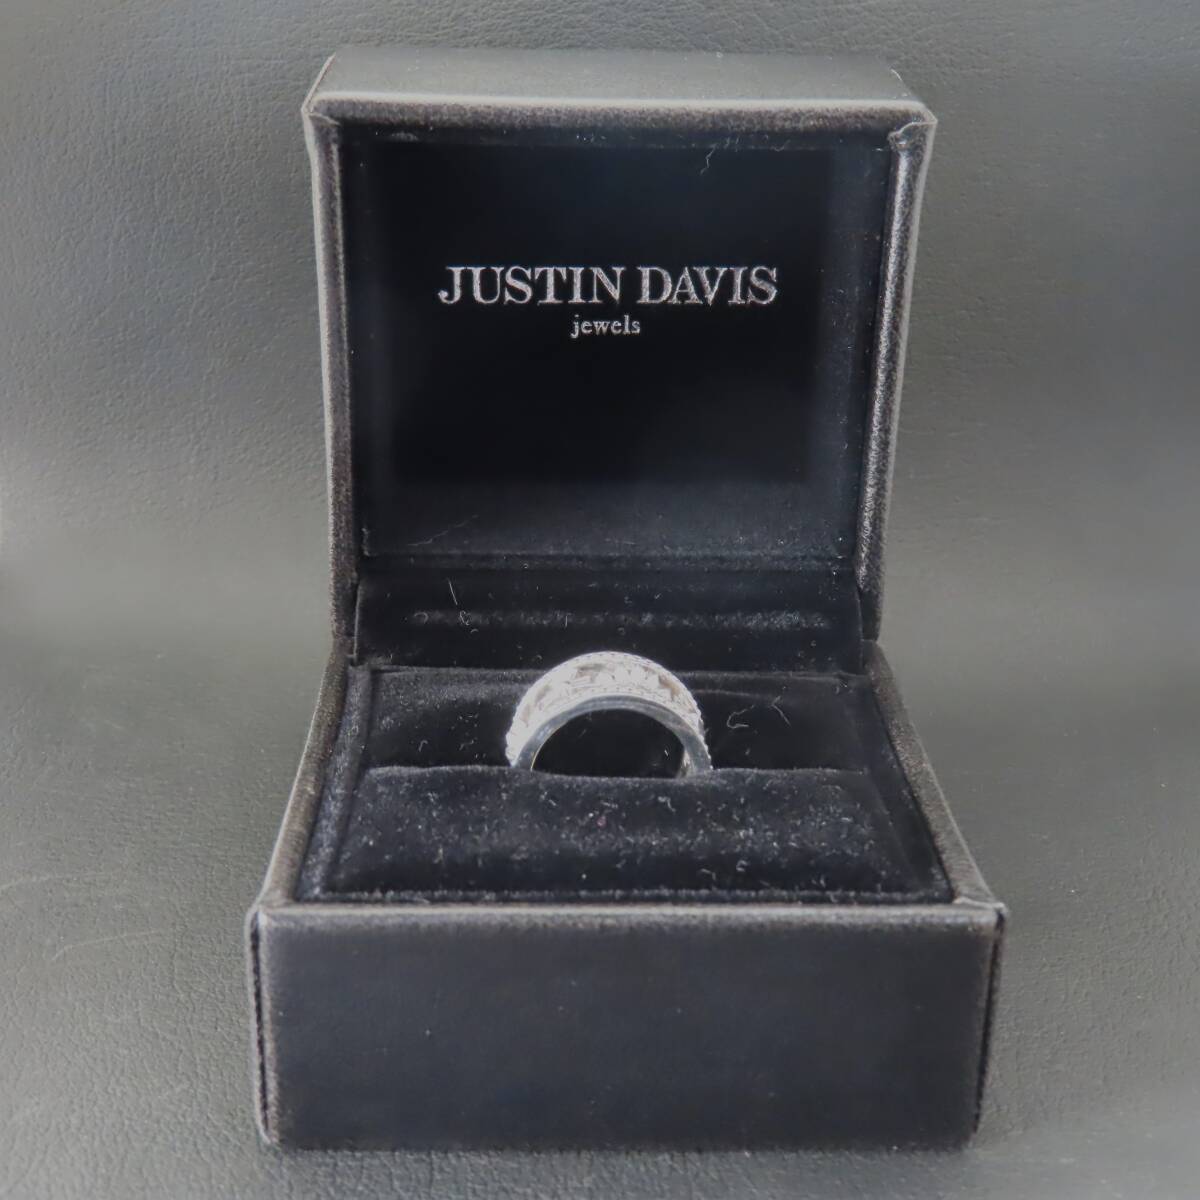  как новый прекрасный товар JUSTIN DAVIS Justin Davis серебряный 925 MEDIEVAL WEDDING BAND 10 номер 7.1g Crown .. Cross 10 знак . с коробкой 